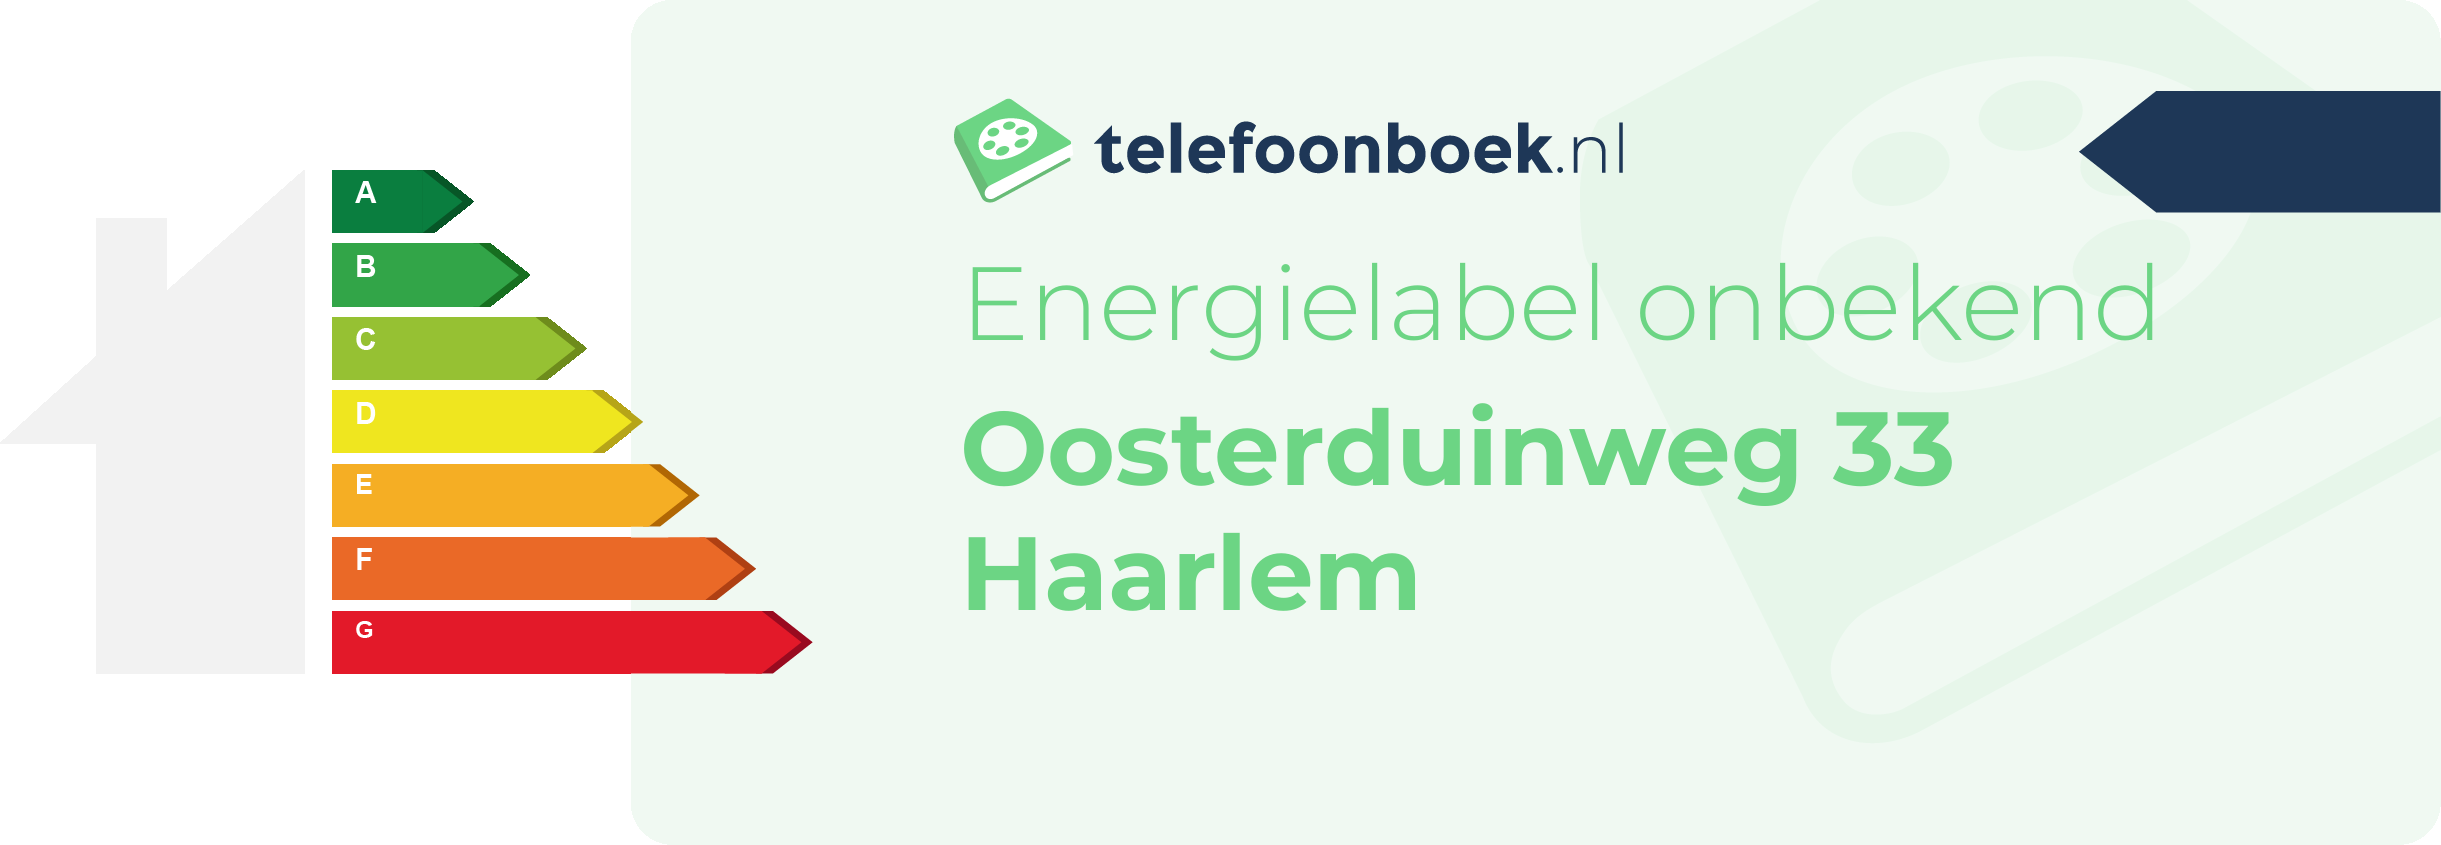 Energielabel Oosterduinweg 33 Haarlem